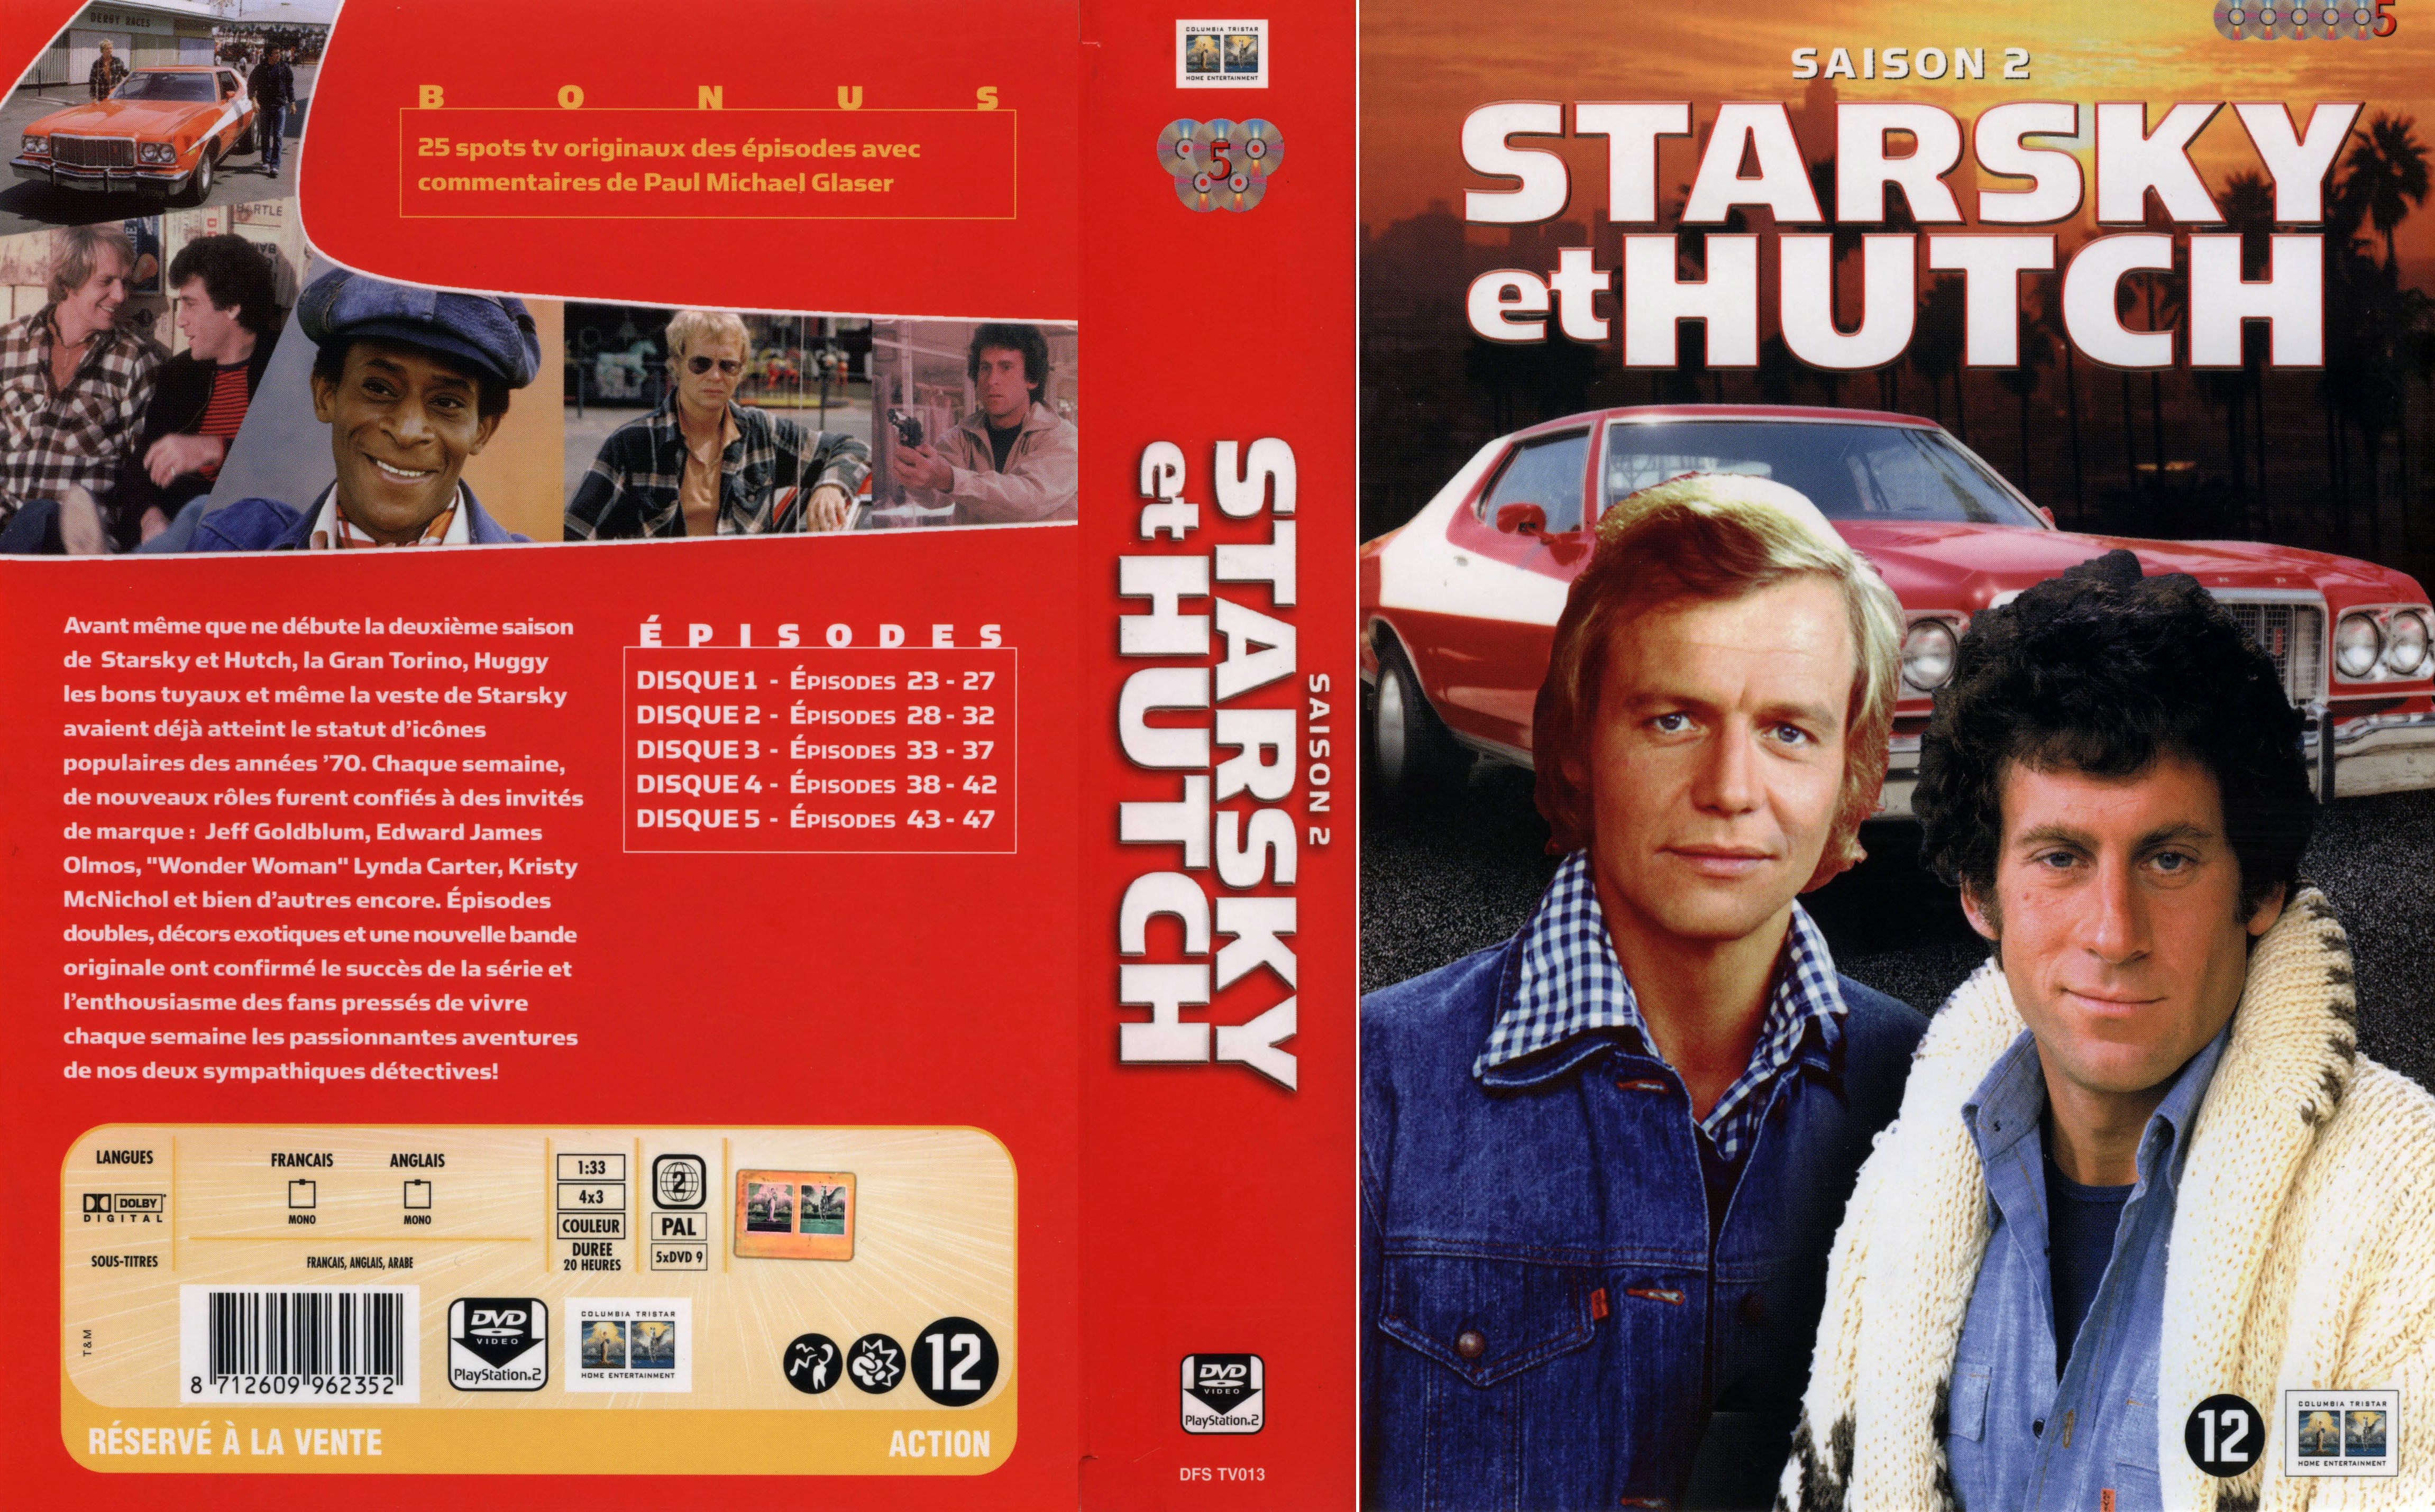 Jaquette DVD Starsky et Hutch saison 2